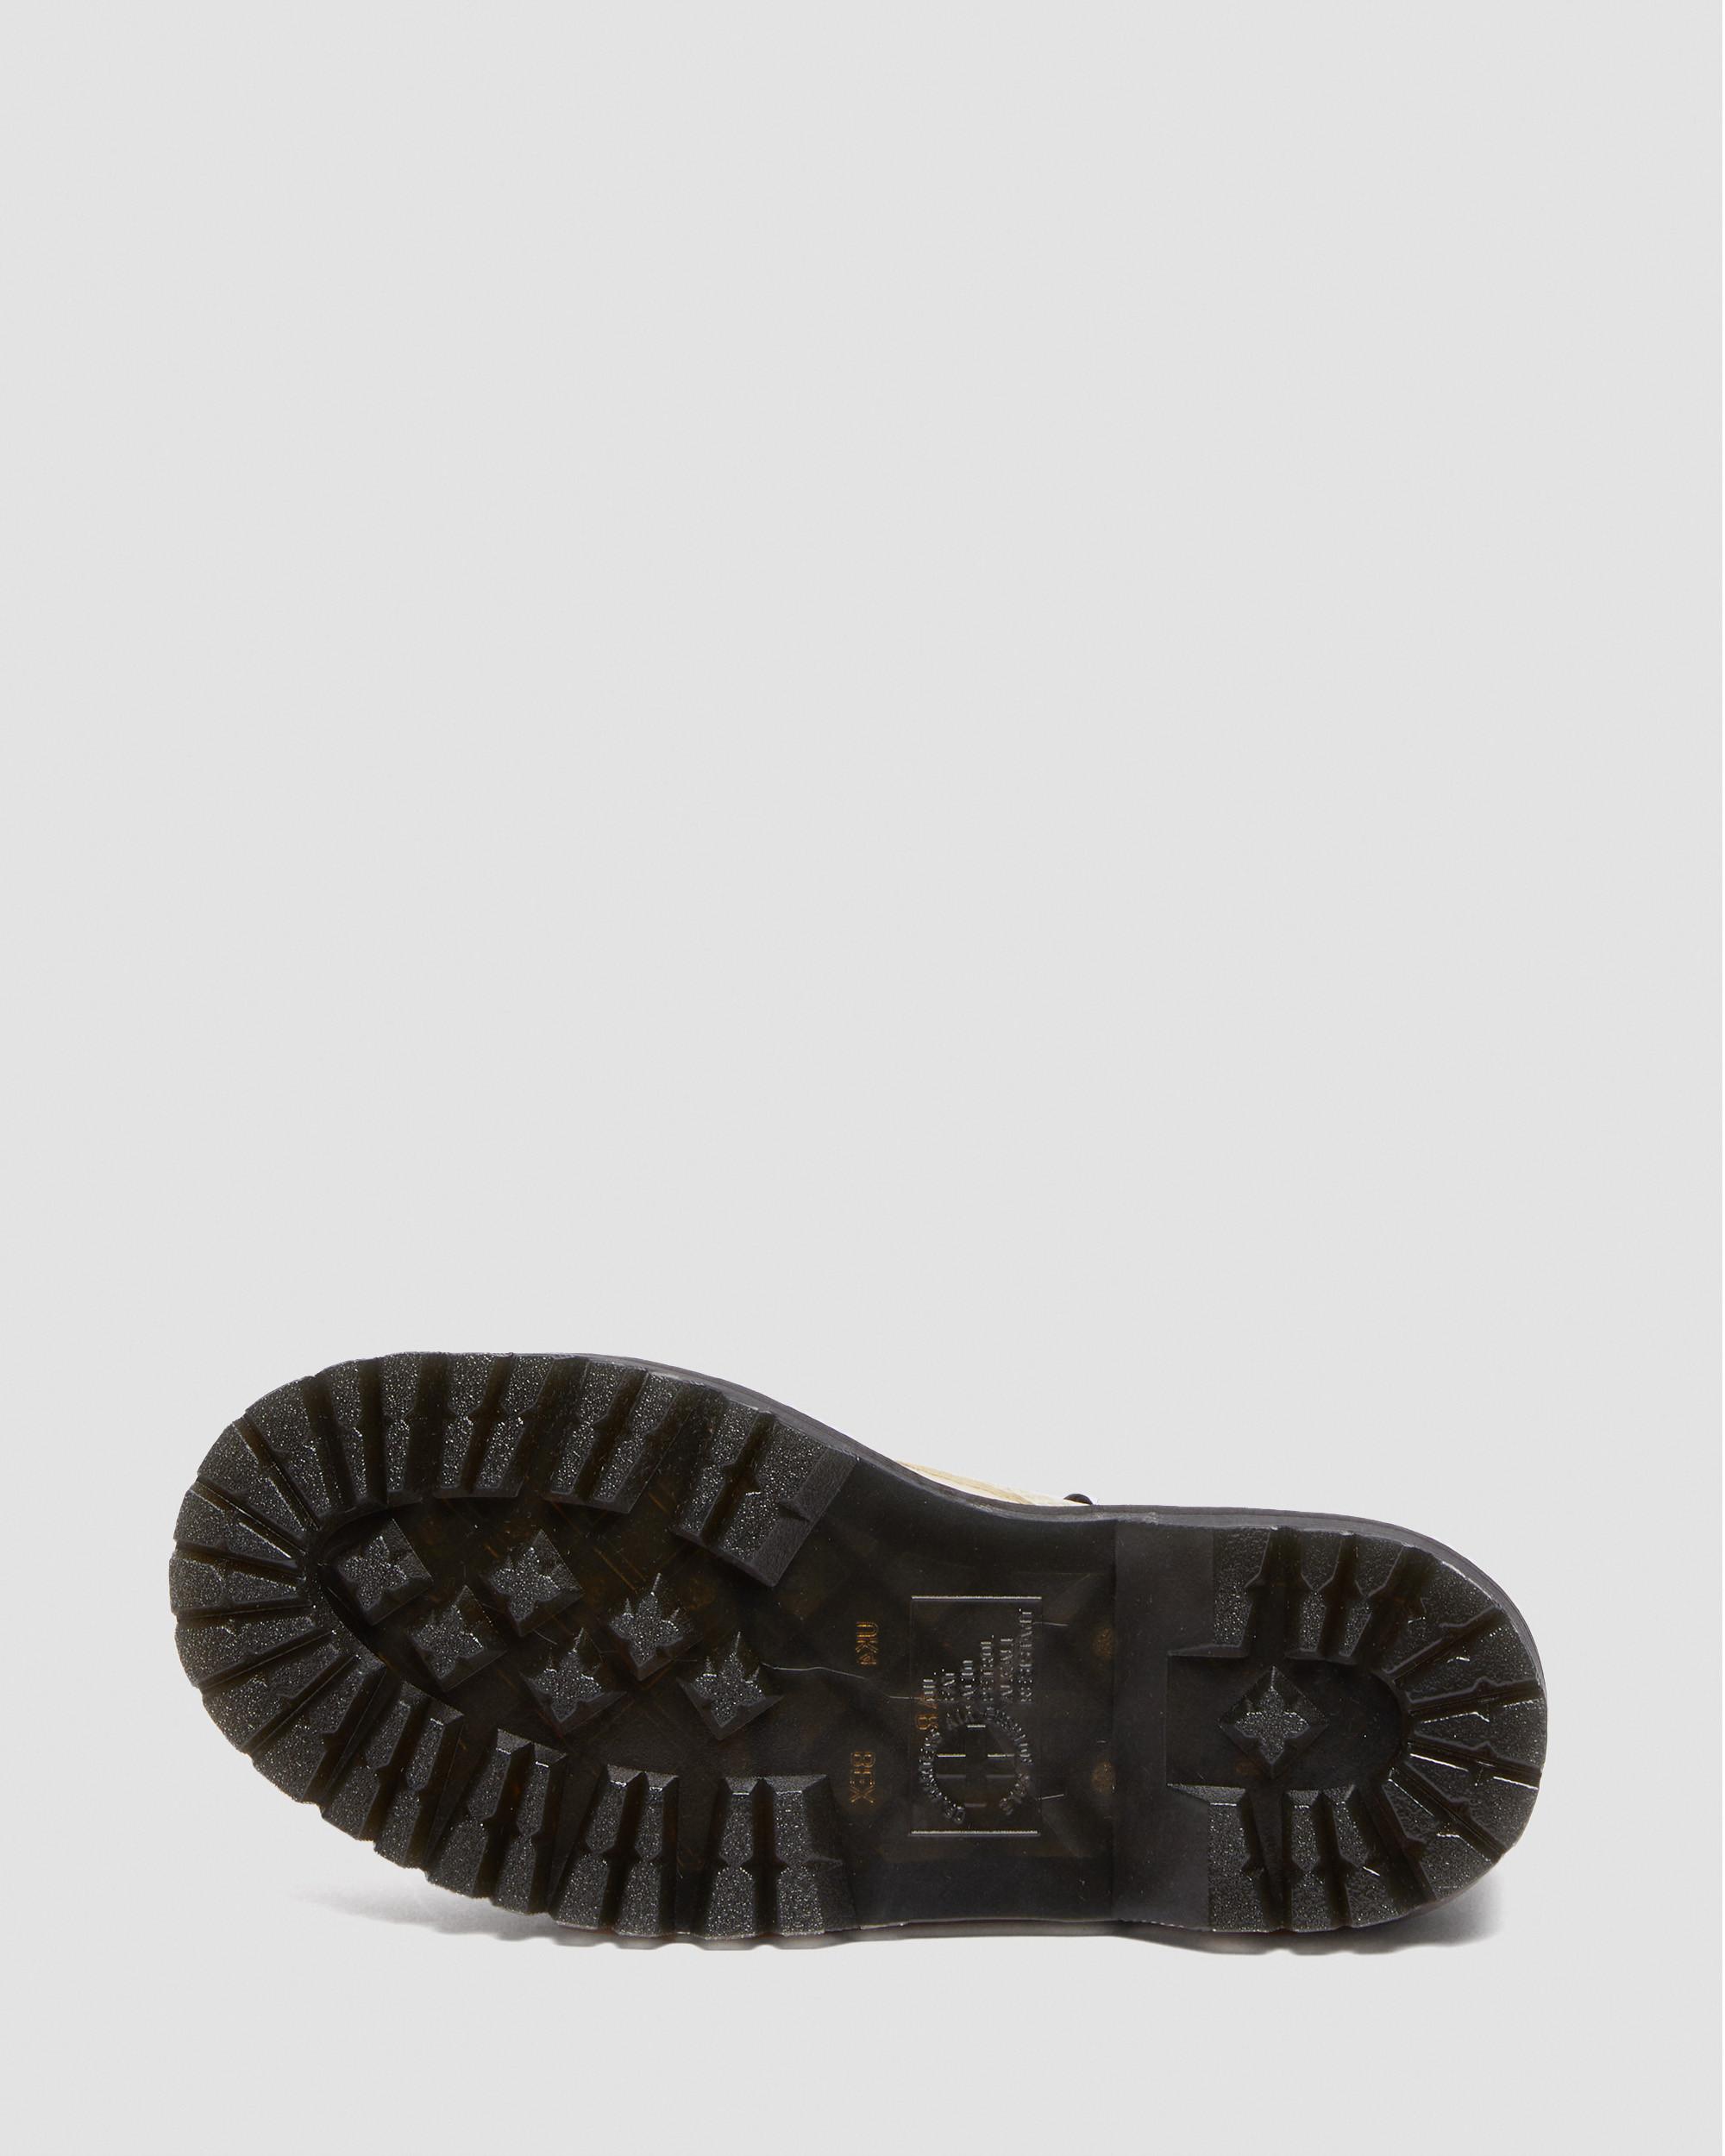 Sinclair-platformstøvler i Milled Nappa-læder i neutralSinclair-platformstøvler i Milled Nappa-læder Dr. Martens